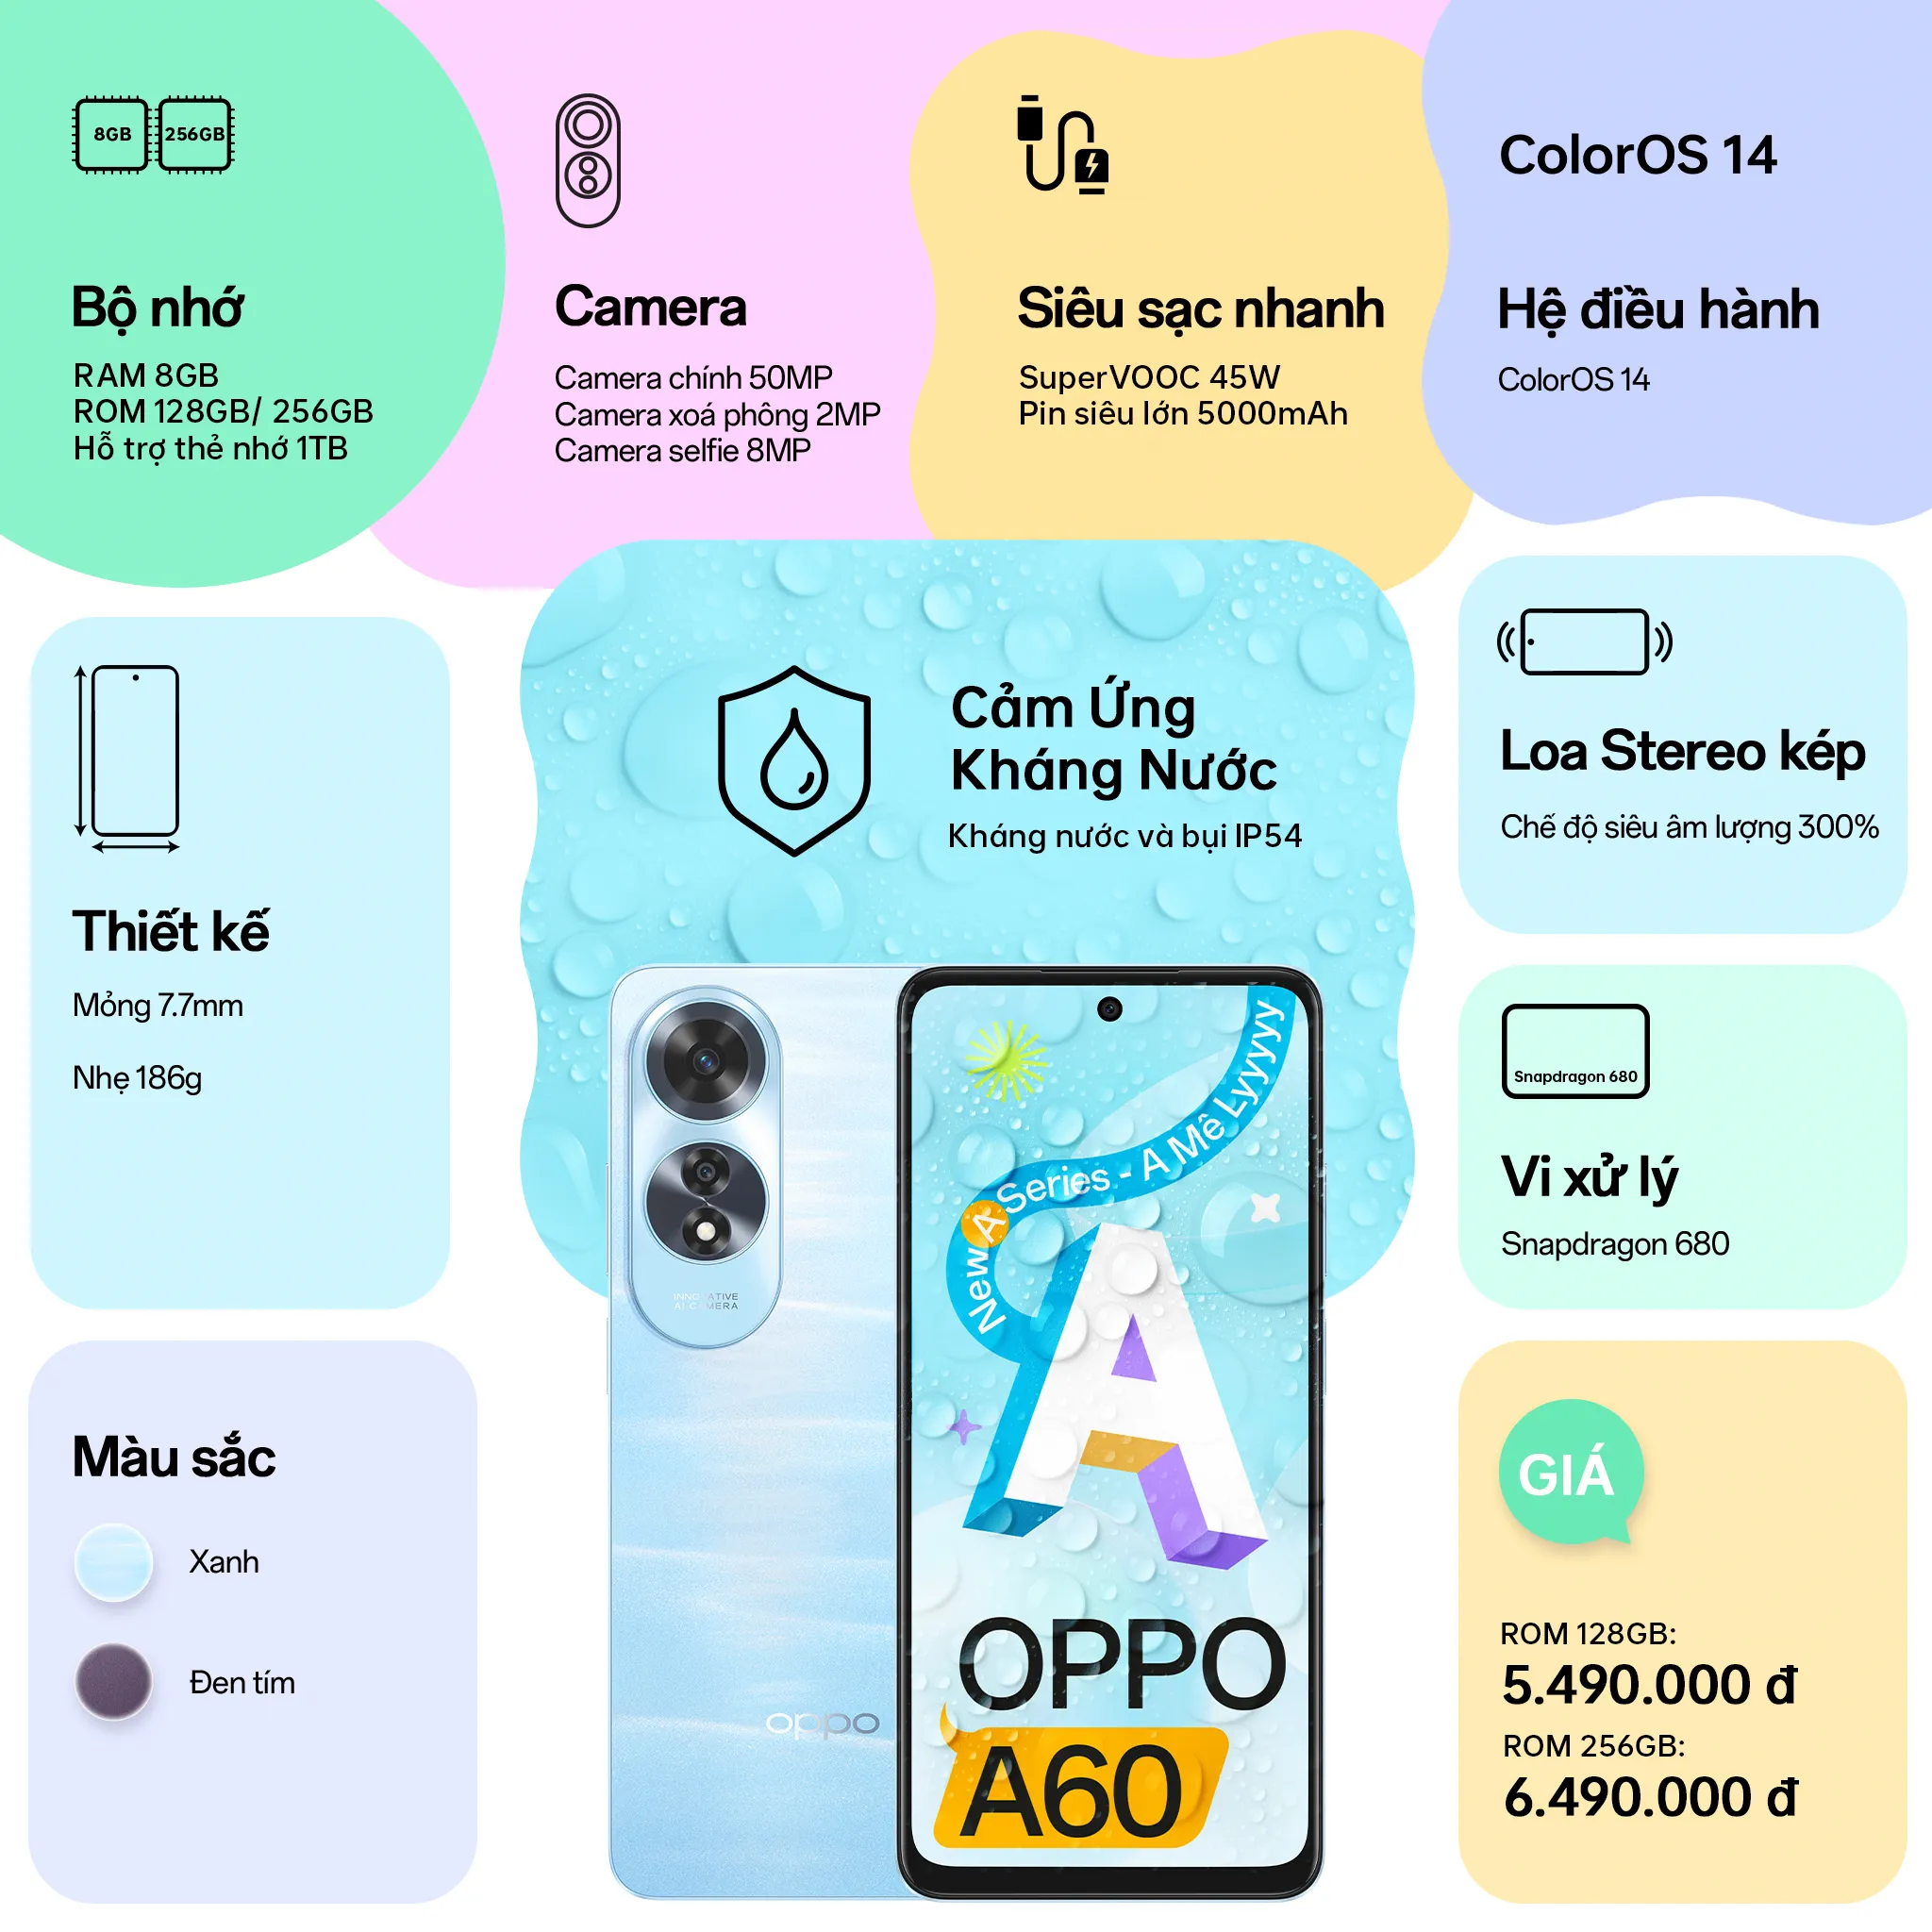 OPPO A60 chính thức trình làng: Điện thoại “A mê ly” dành cho GenZ